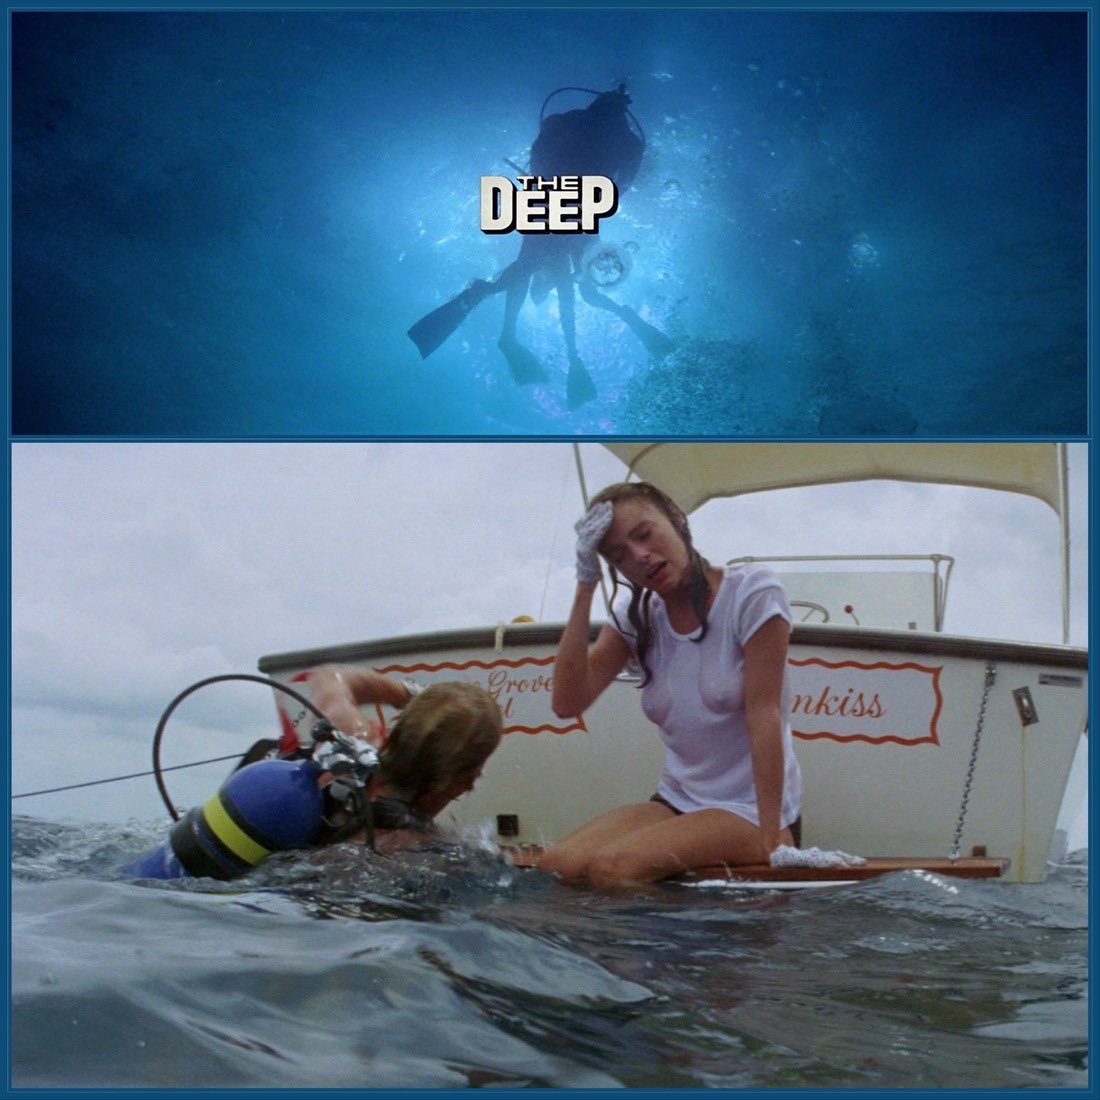 The Deep (1977) Dir. Peter Yates
#Bisset #Nolte